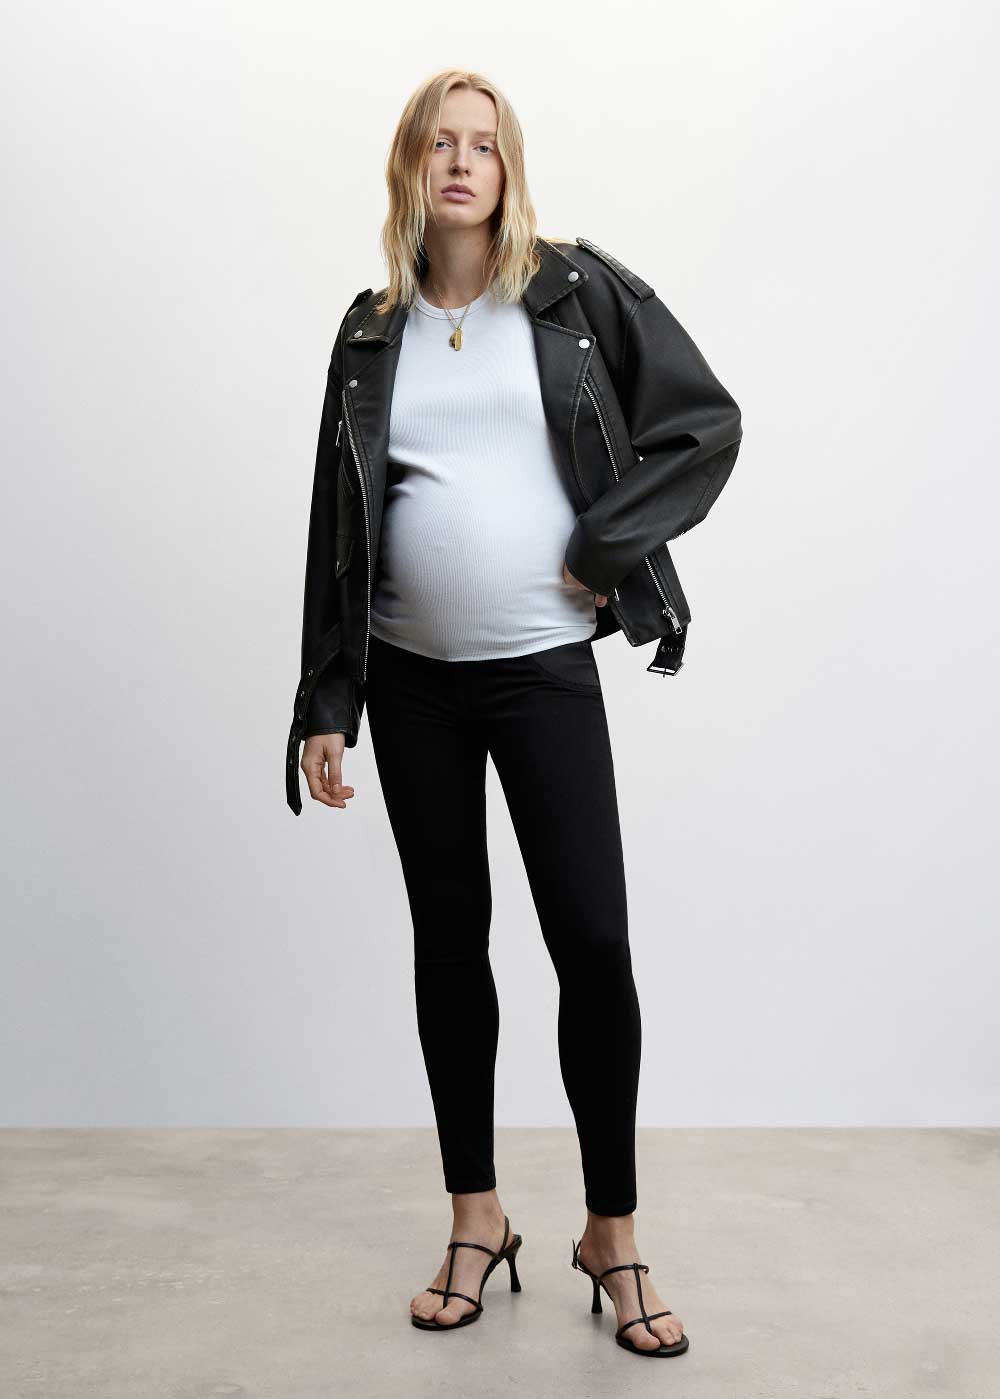 moda embarazadas tendencias coleccion mango maternity